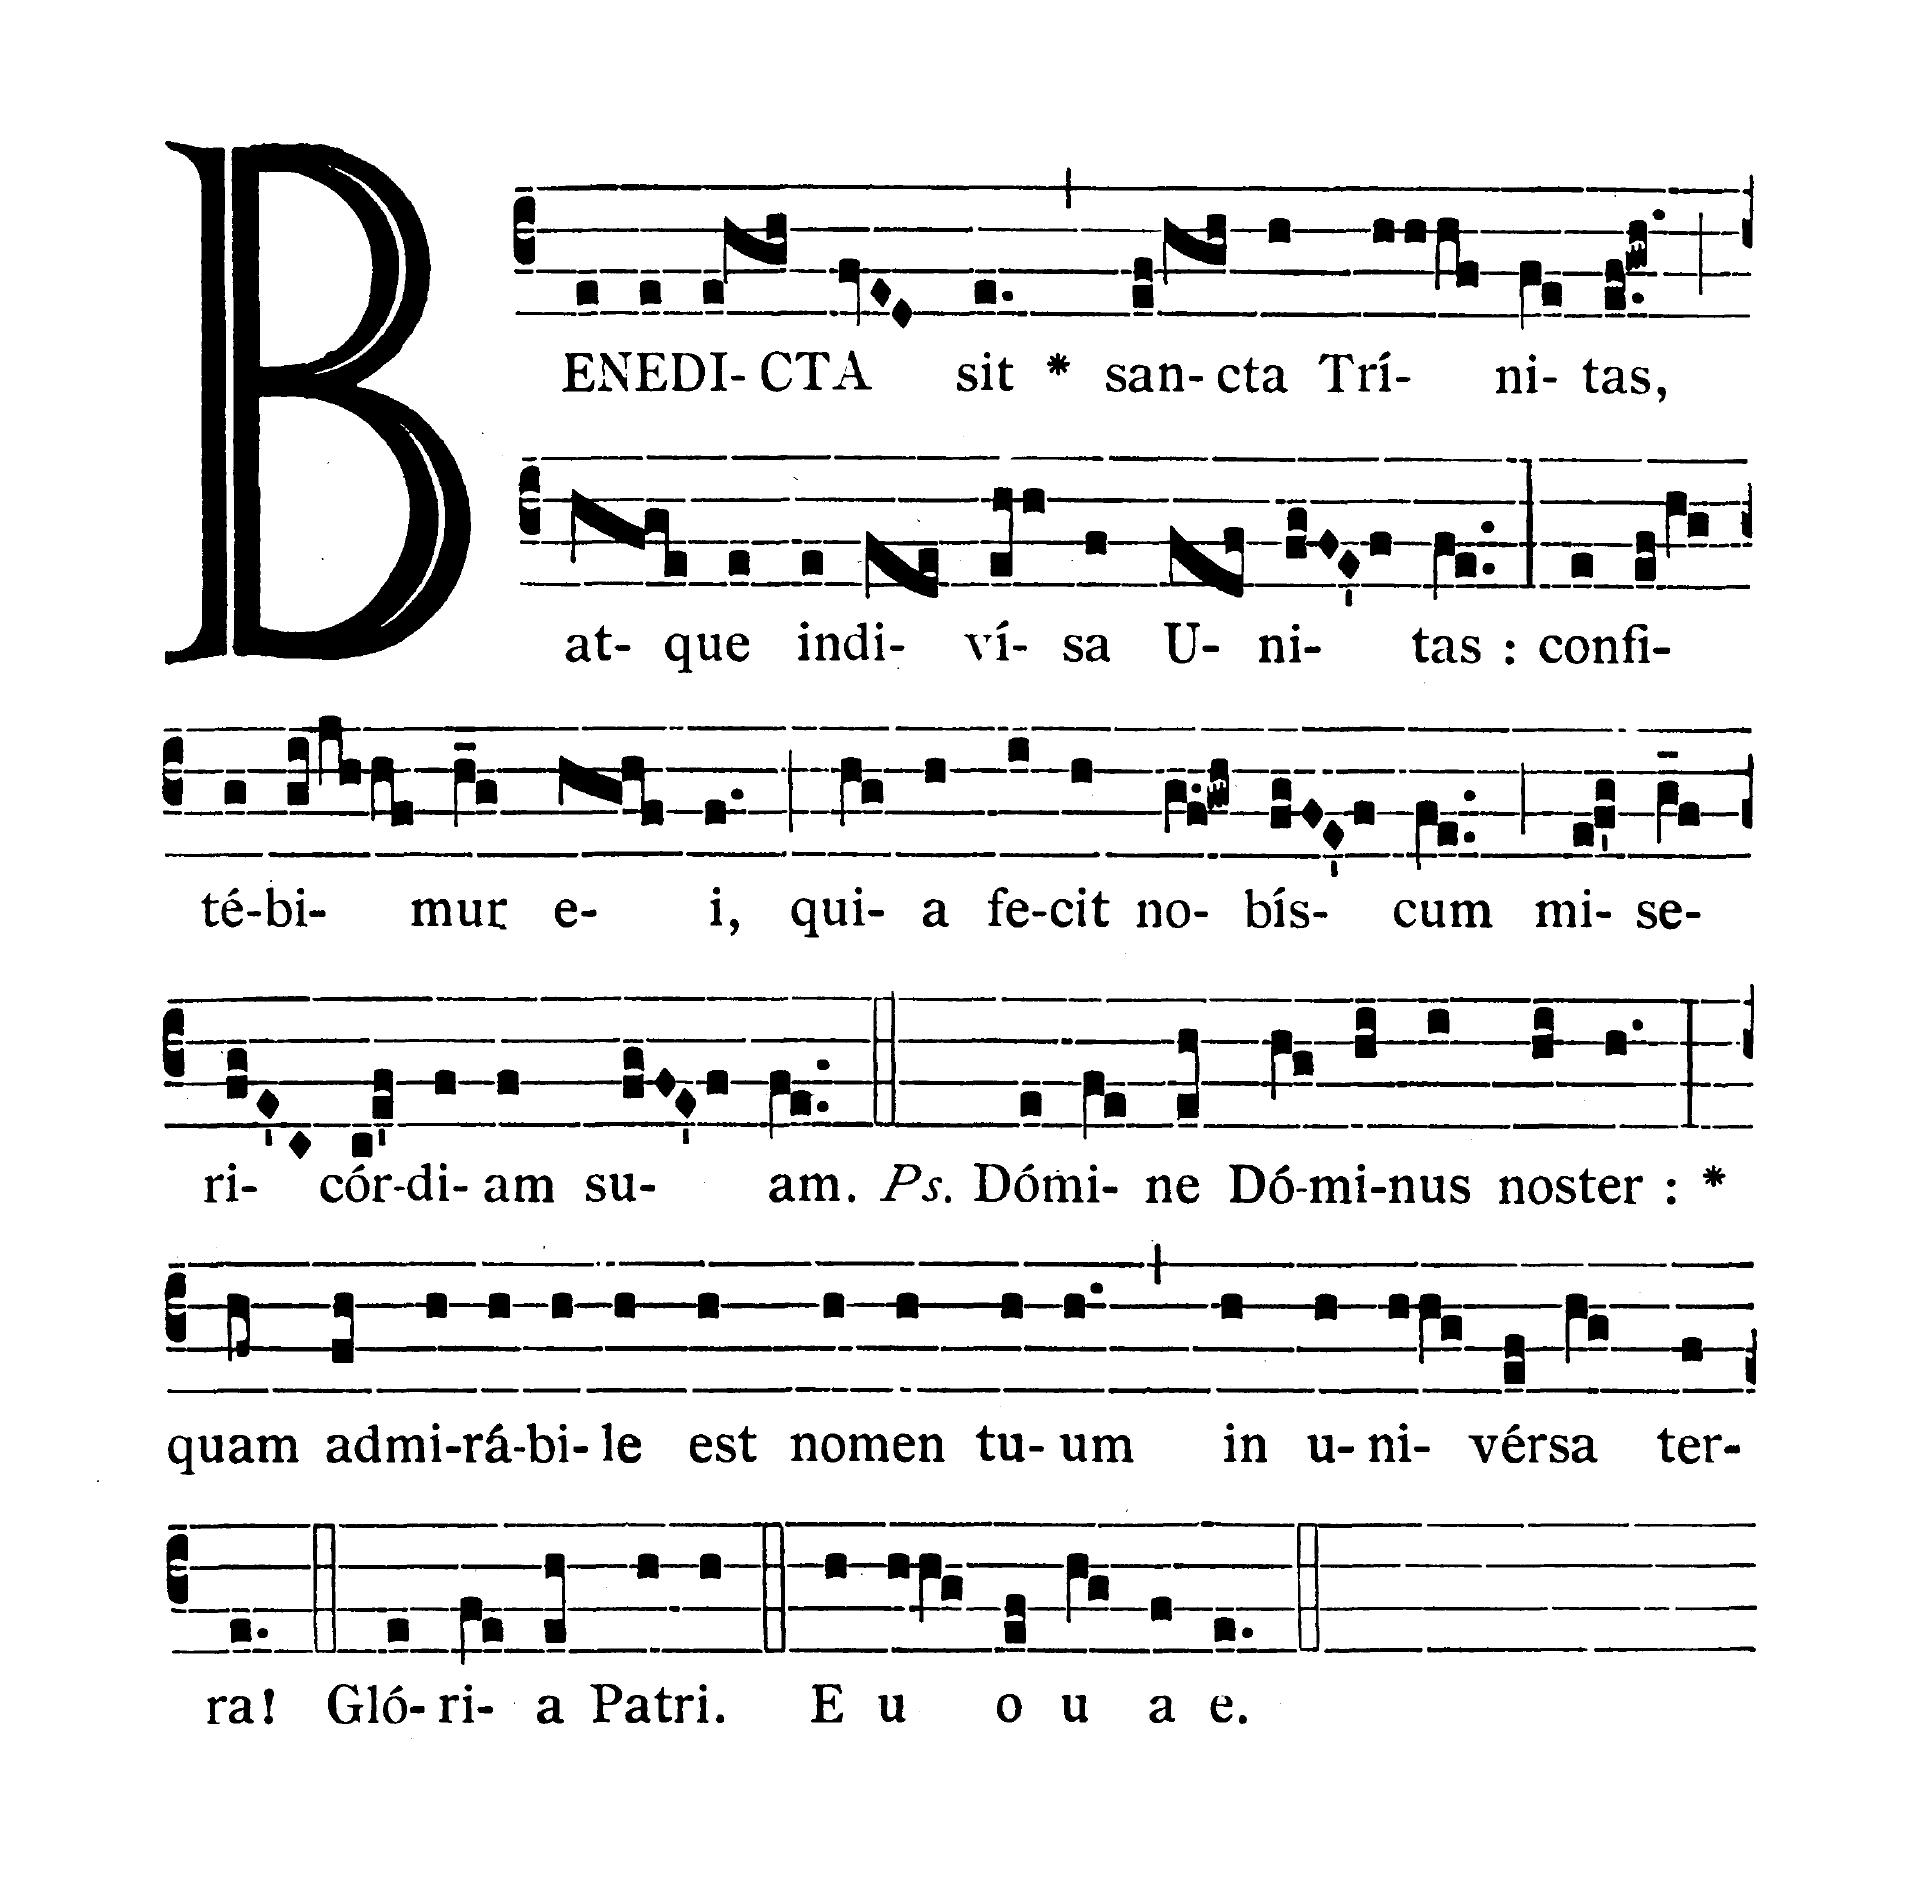 In festo Sanctissimi Trinitatis - Introitus (Benedicta sit)